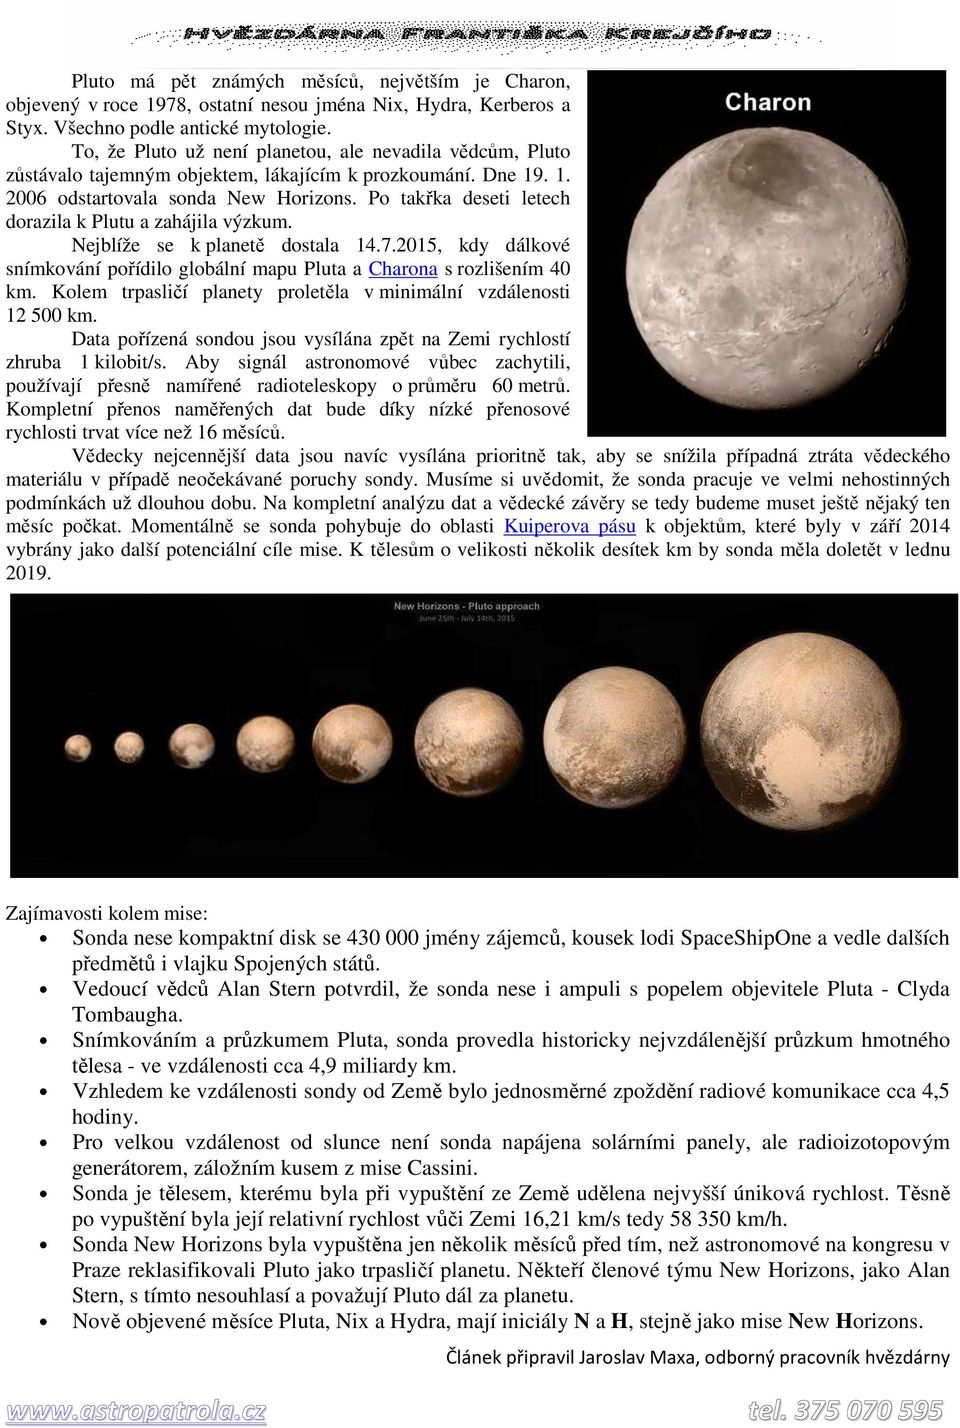 Po takřka deseti letech dorazila k Plutu a zahájila výzkum. Nejblíže se k planetě dostala 14.7.2015, kdy dálkové snímkování pořídilo globální mapu Pluta a Charona s rozlišením 40 km.